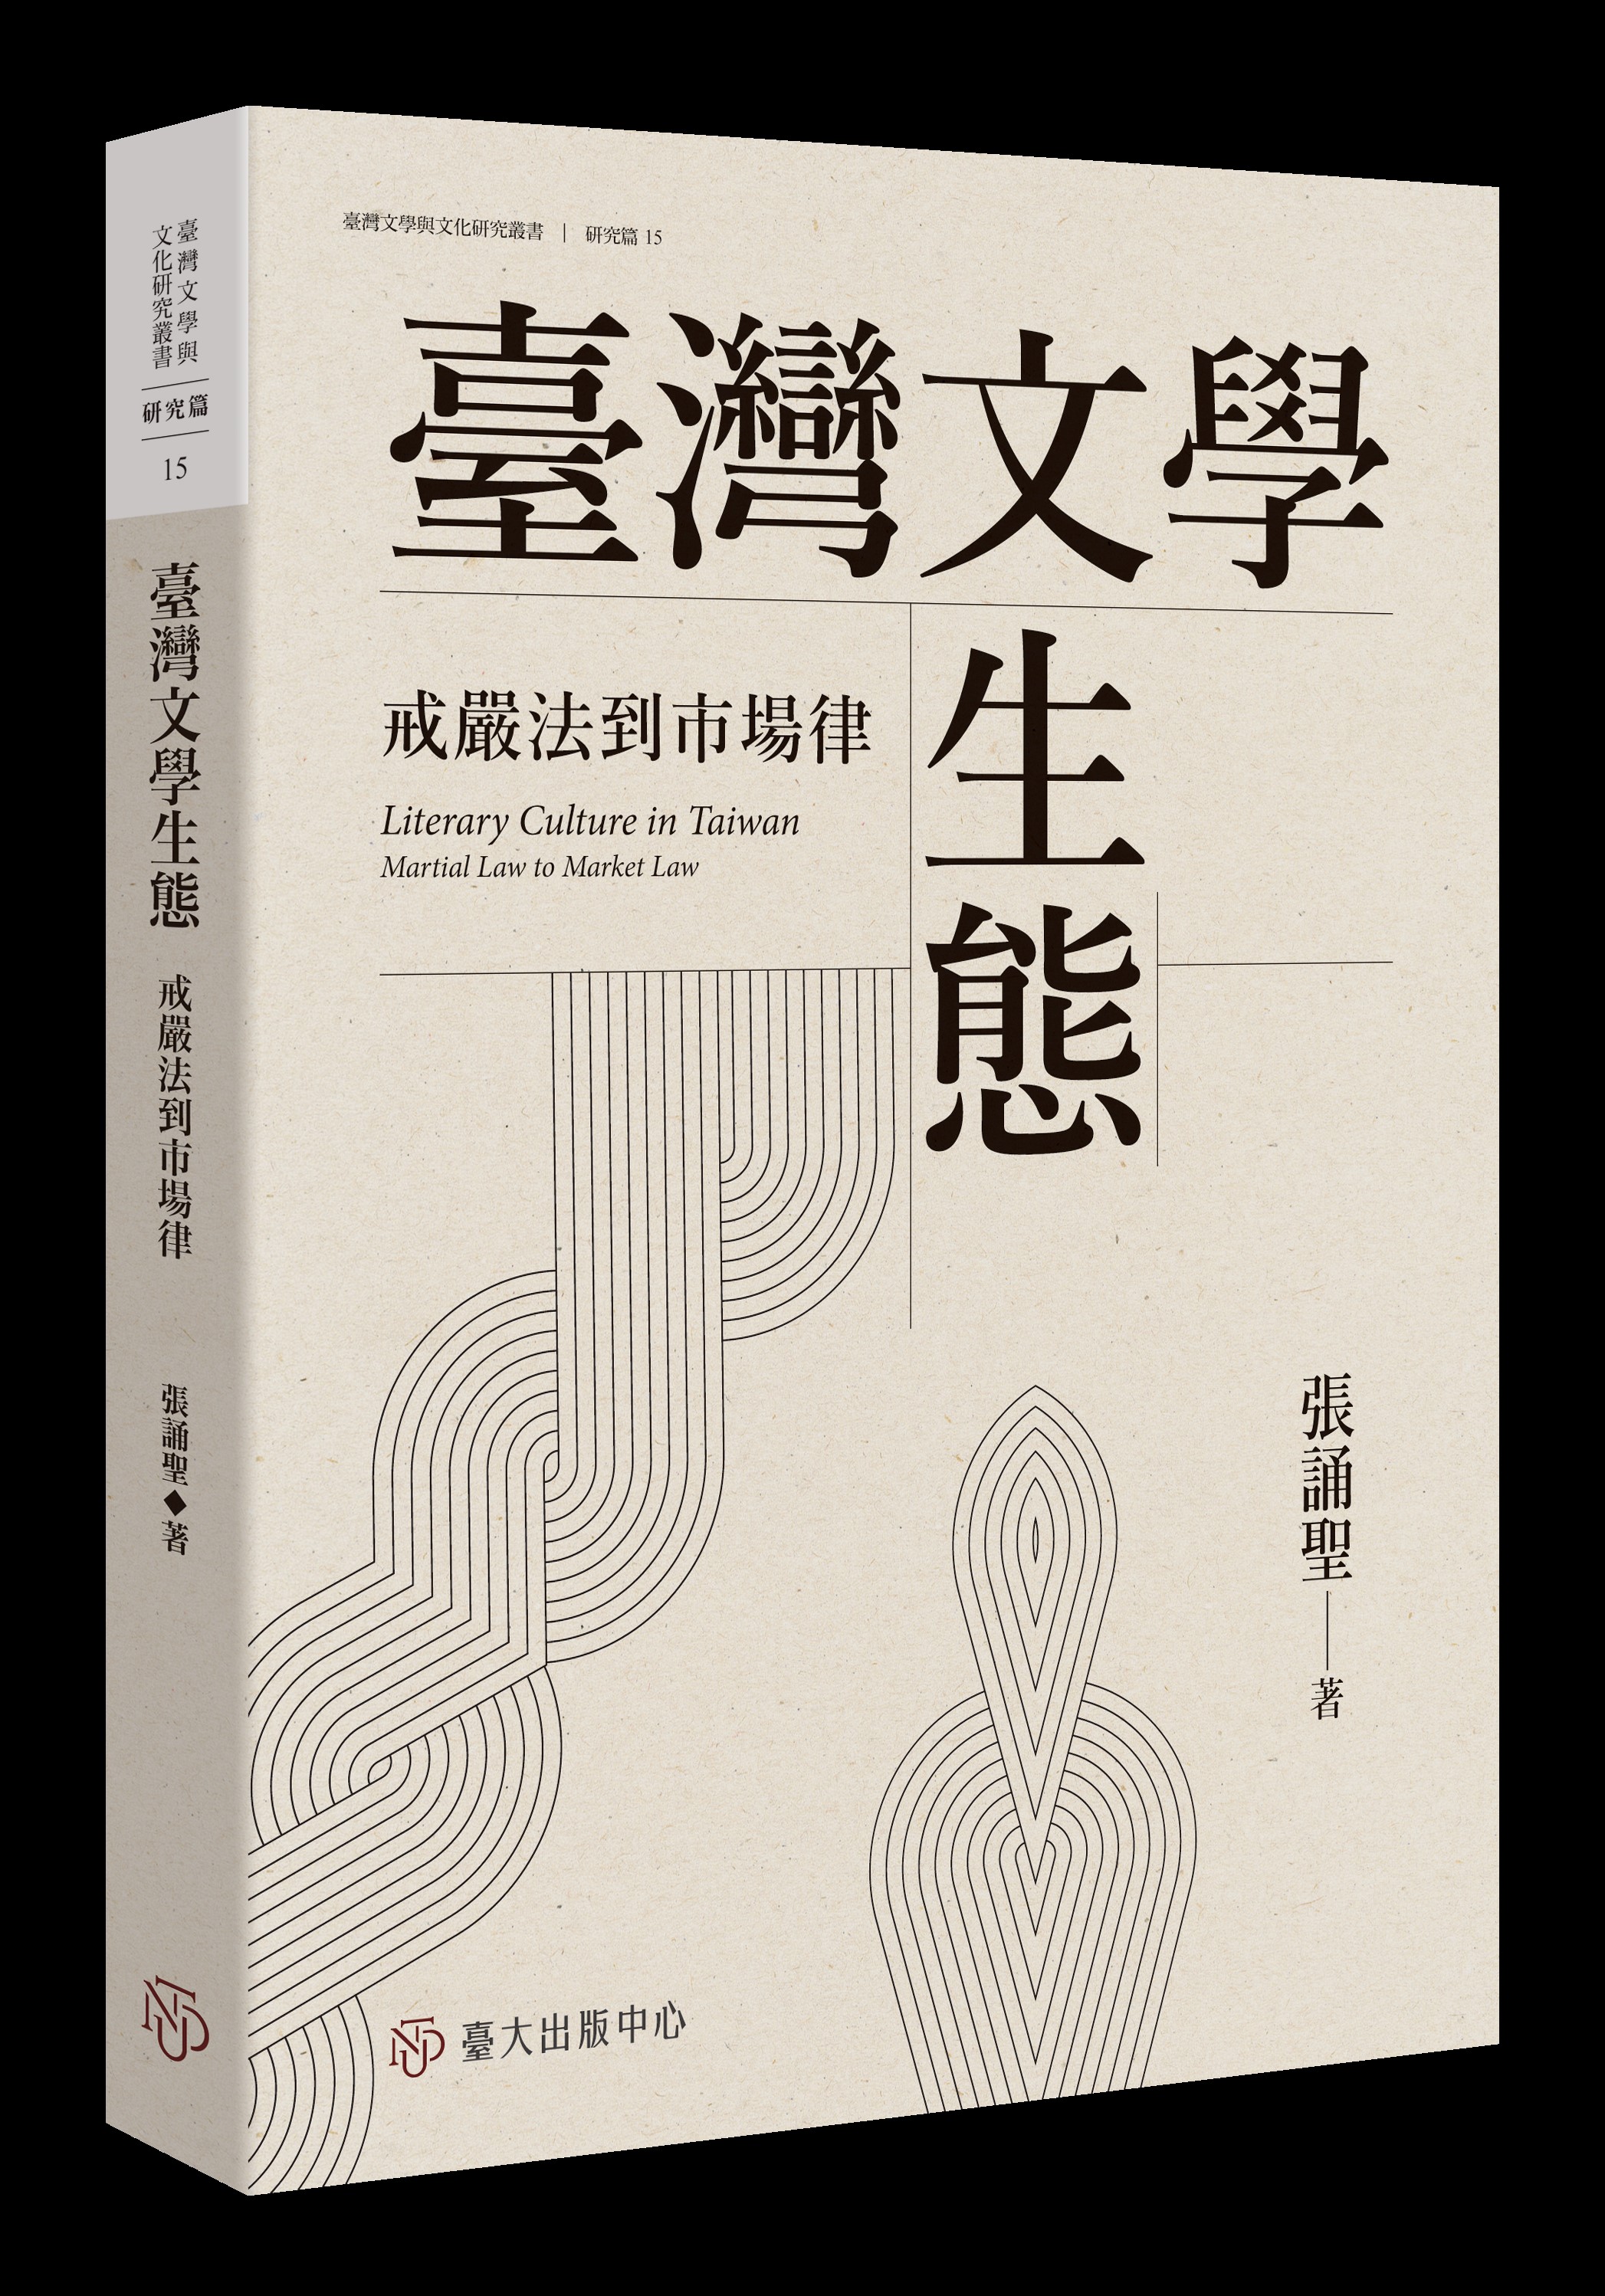 臺灣文學生態: 戒嚴法到市場律